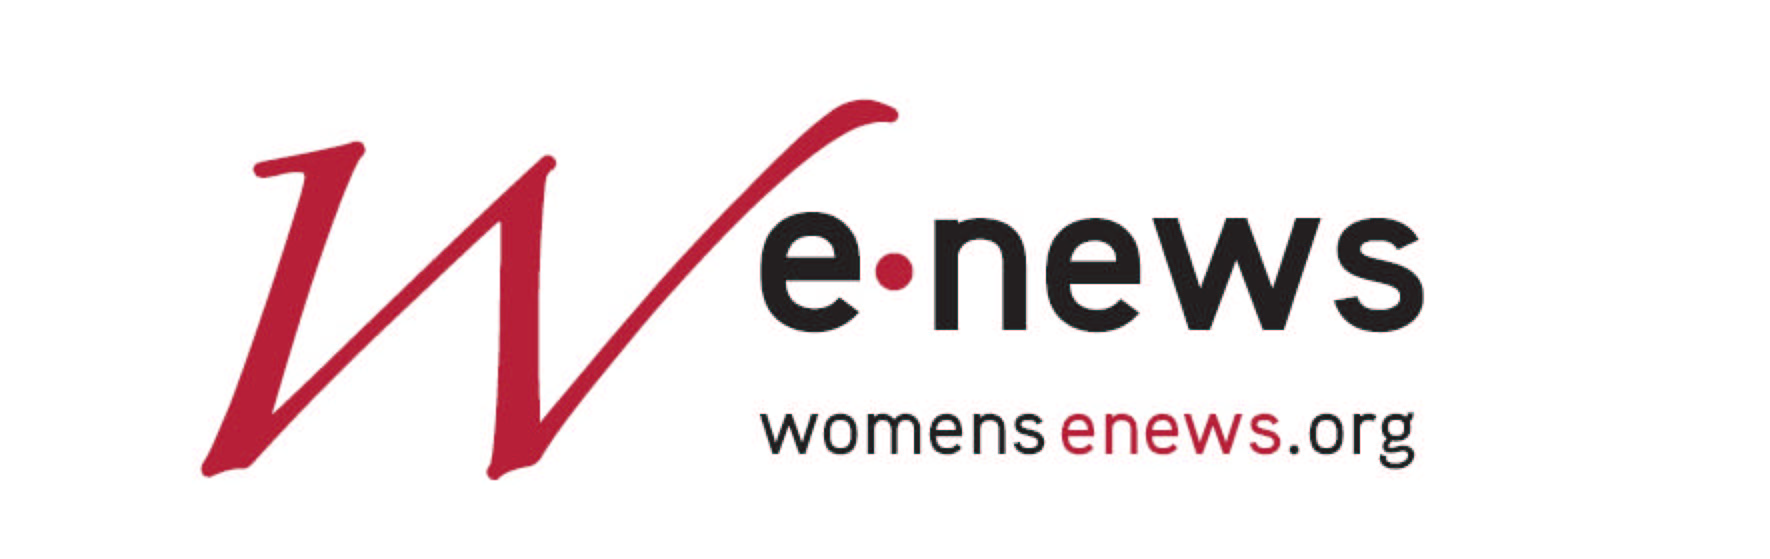 wenews logo